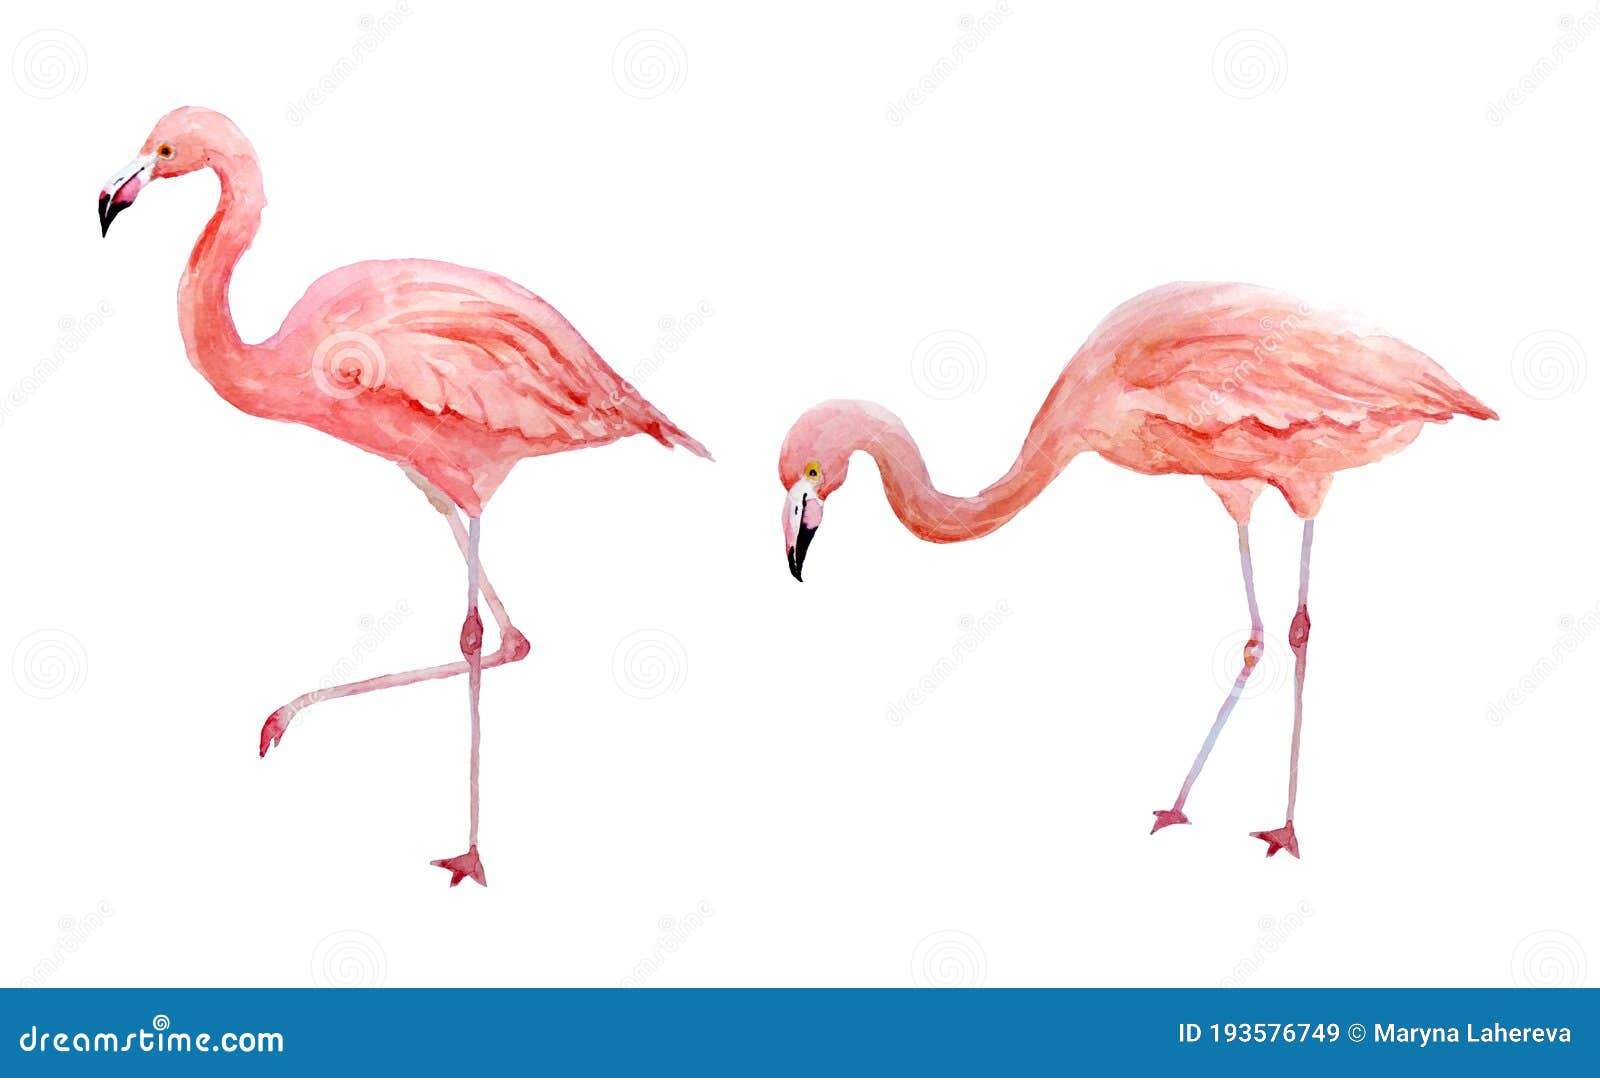 Medicina Médula Mandíbula de la muerte Conjunto De Dos Flamingos Rosados. Flamencos De Rosa De Ave Exótica  Tropical Aislados En Fondo Blanco. Mano De Acuarela Stock de ilustración -  Ilustración de colorido, aloja: 193576749